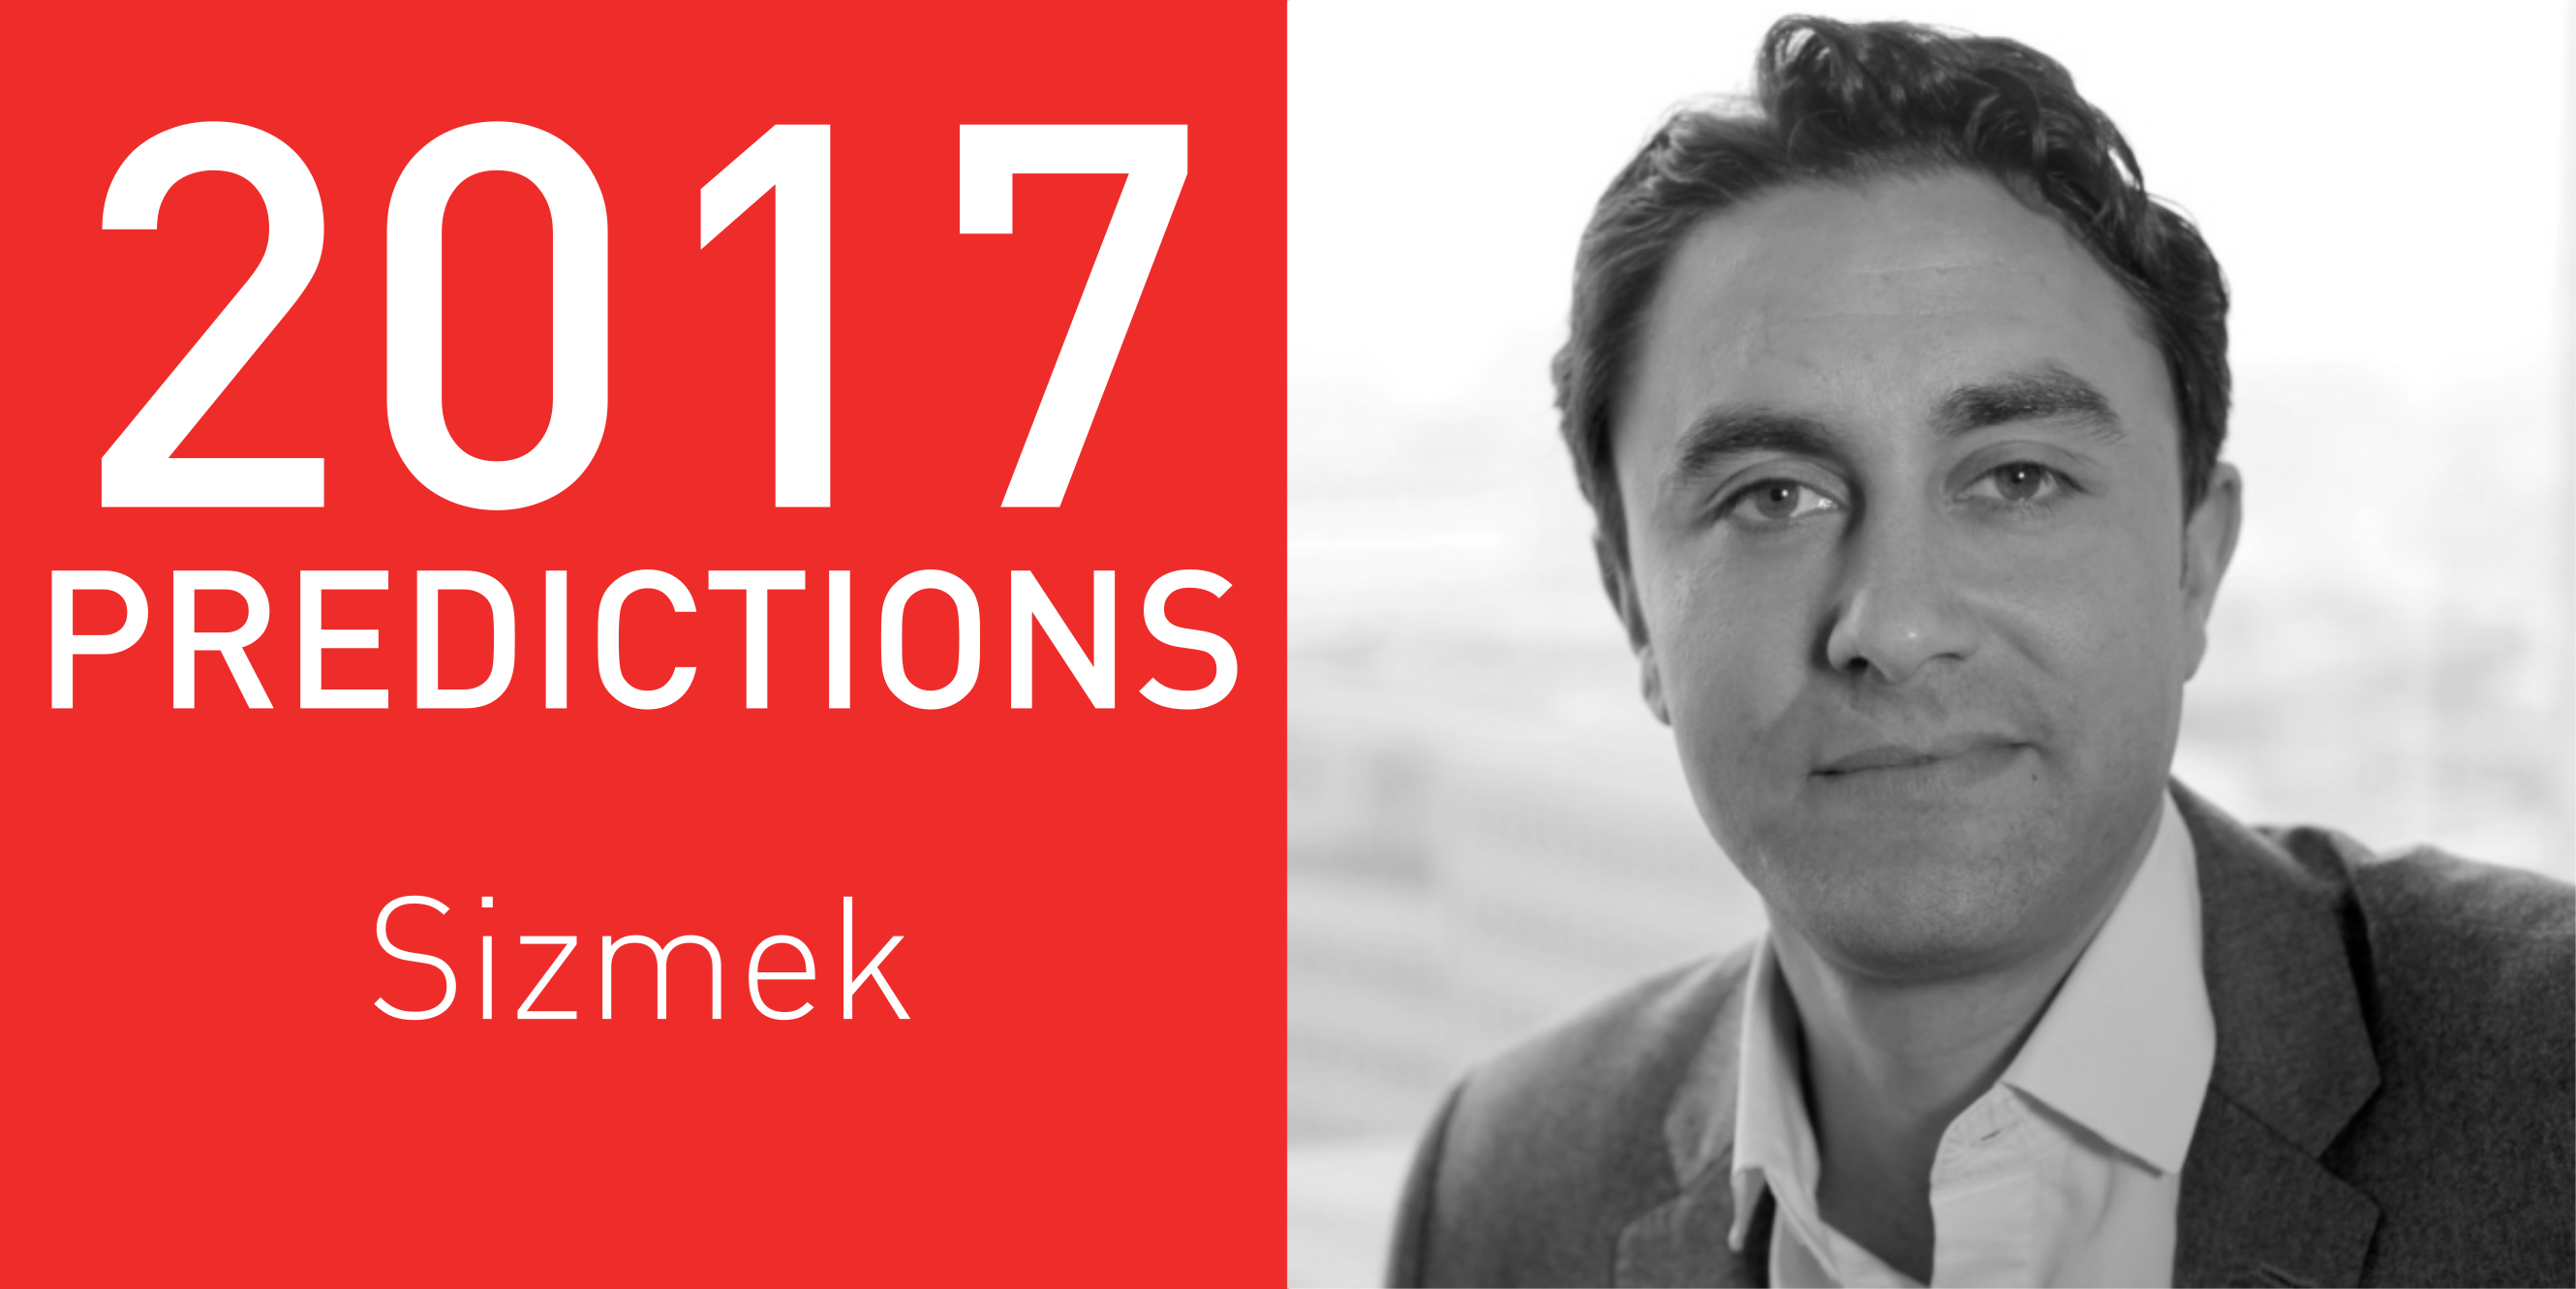 2017 predictions Sizmek